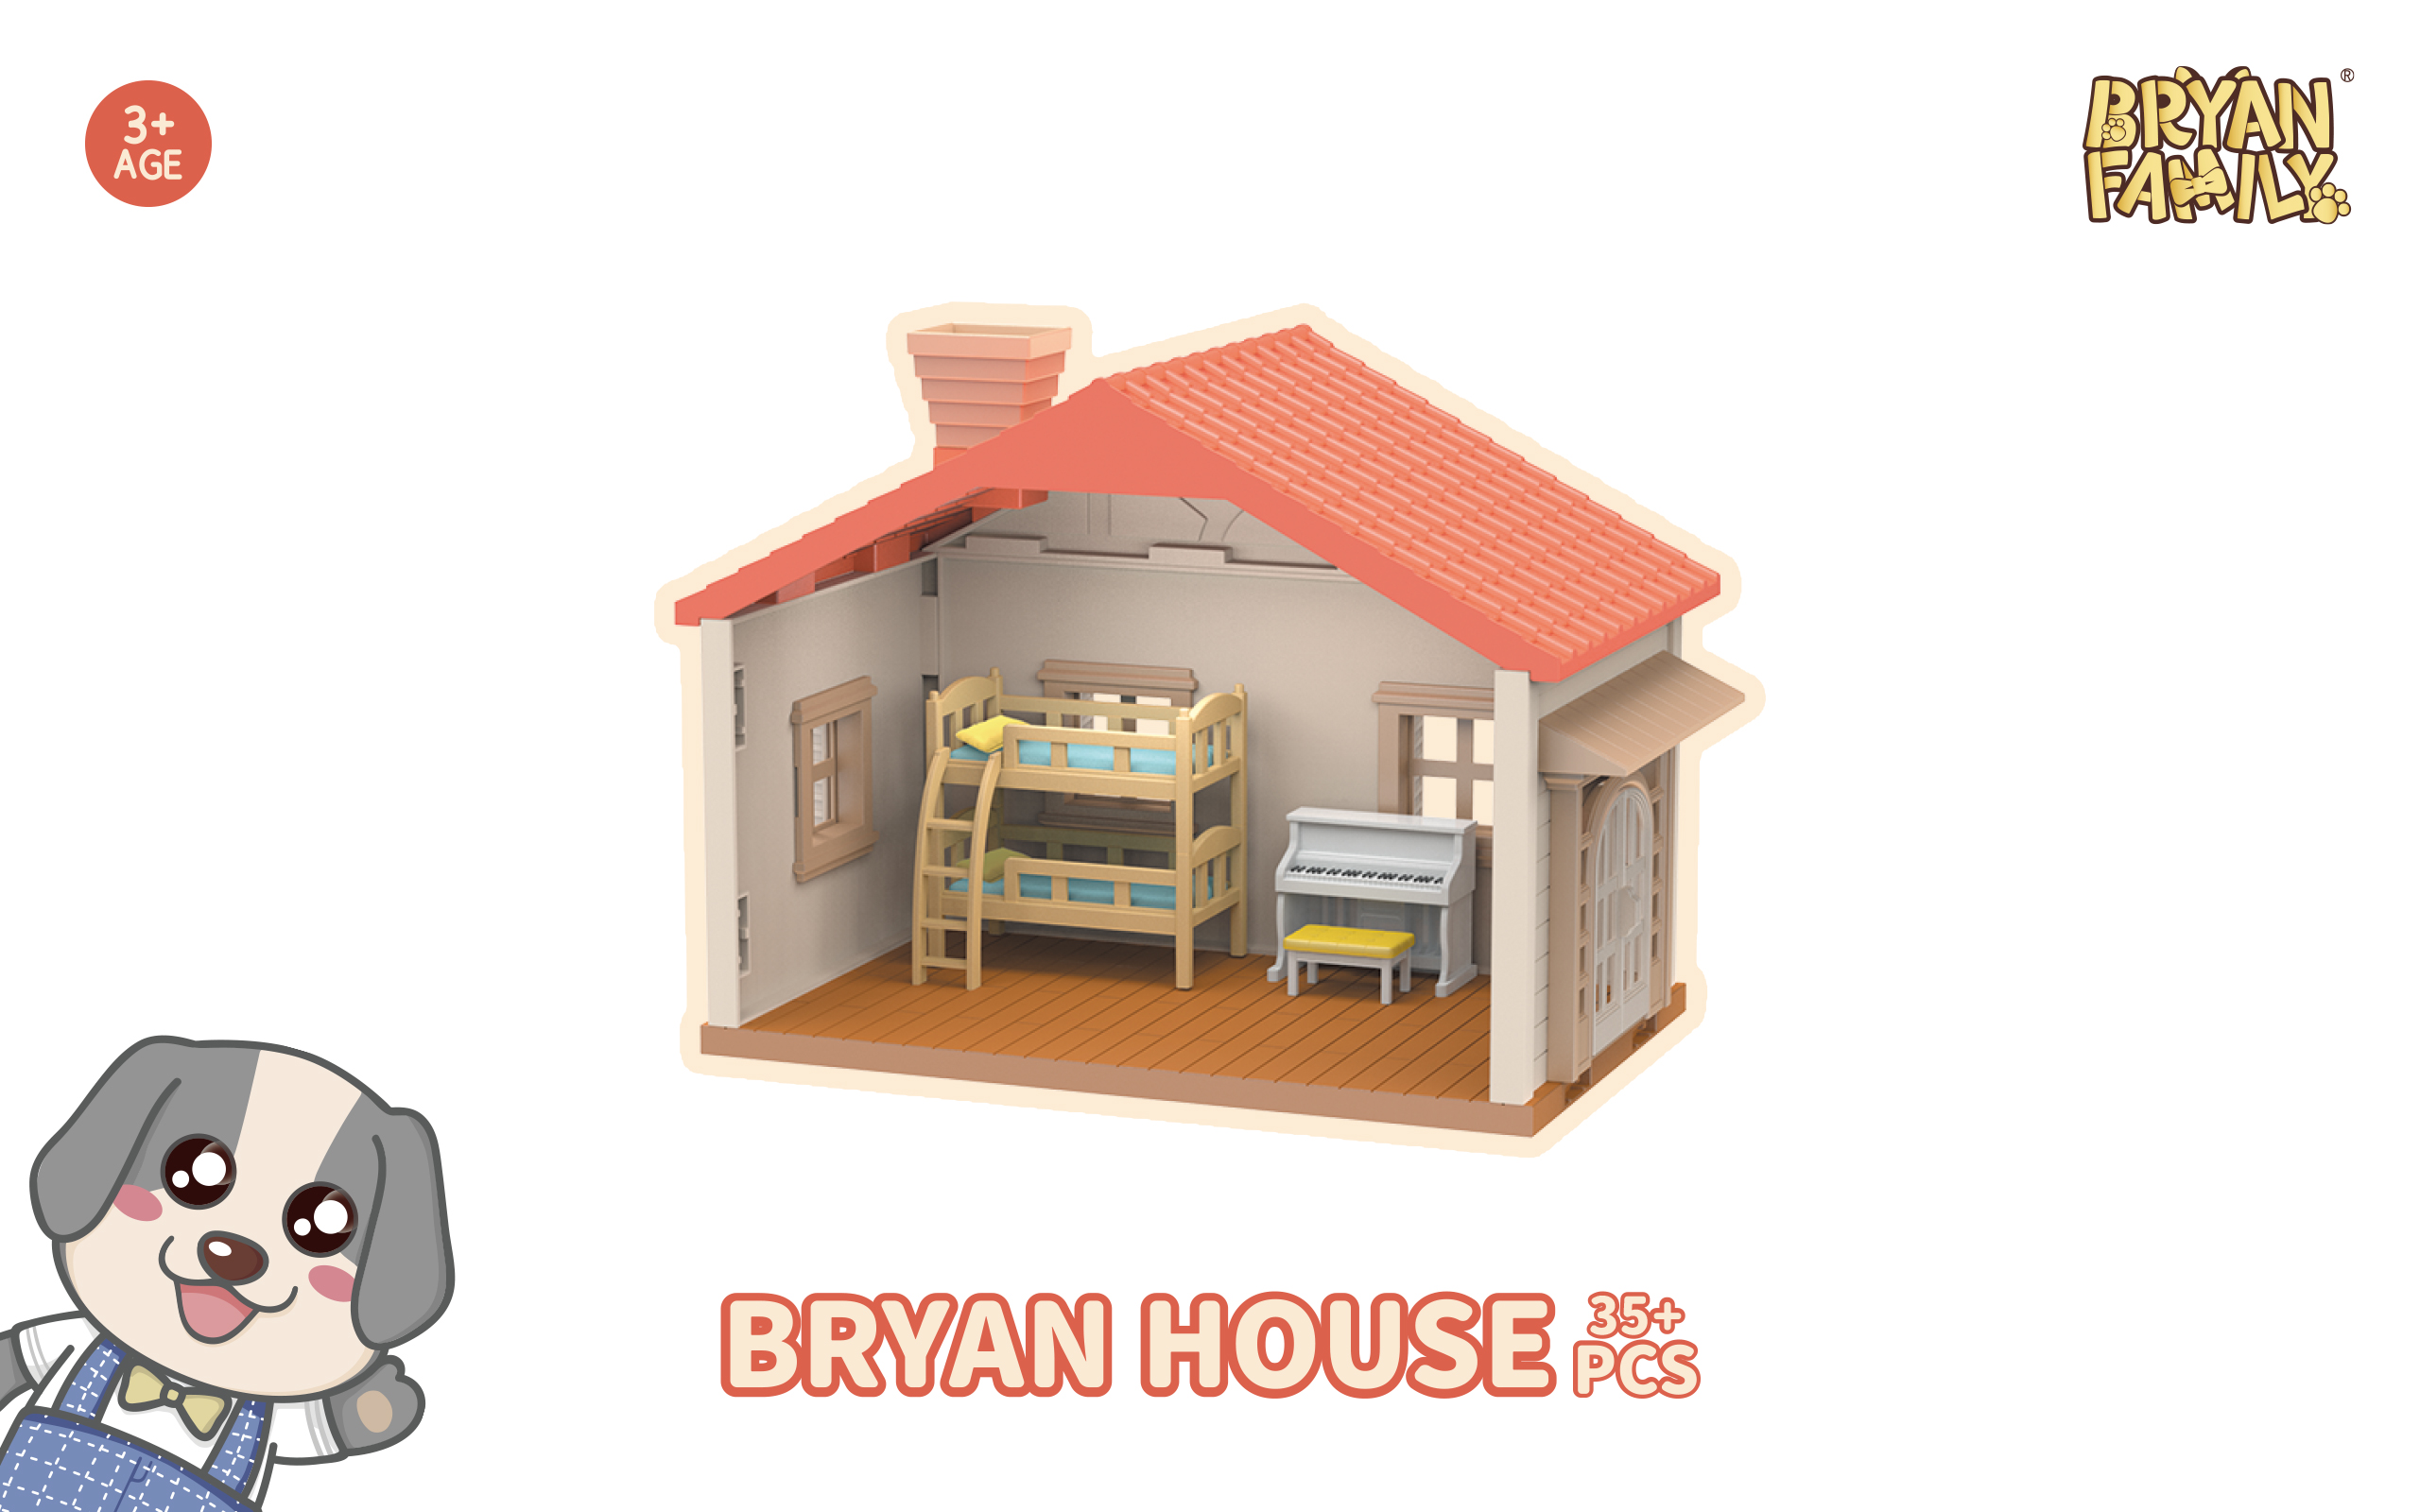 Bryan House 35+PCS